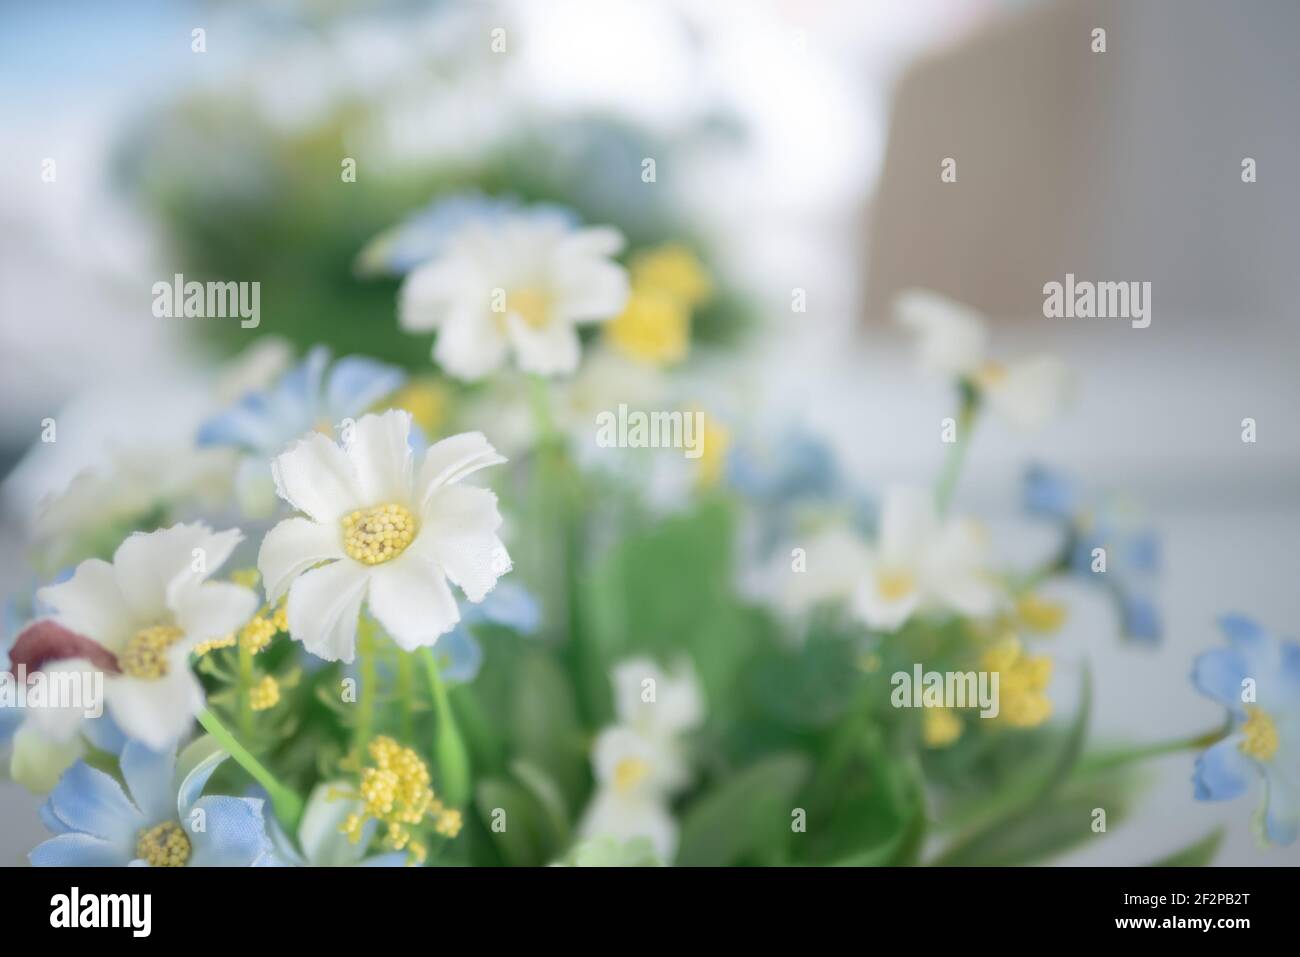 Primer plano flores blancas y azules con polen amarillo. Hermoso florecimiento de flor falsa y hoja verde con fondo borroso. Seleccione enfoque profundidad profundidad Foto de stock